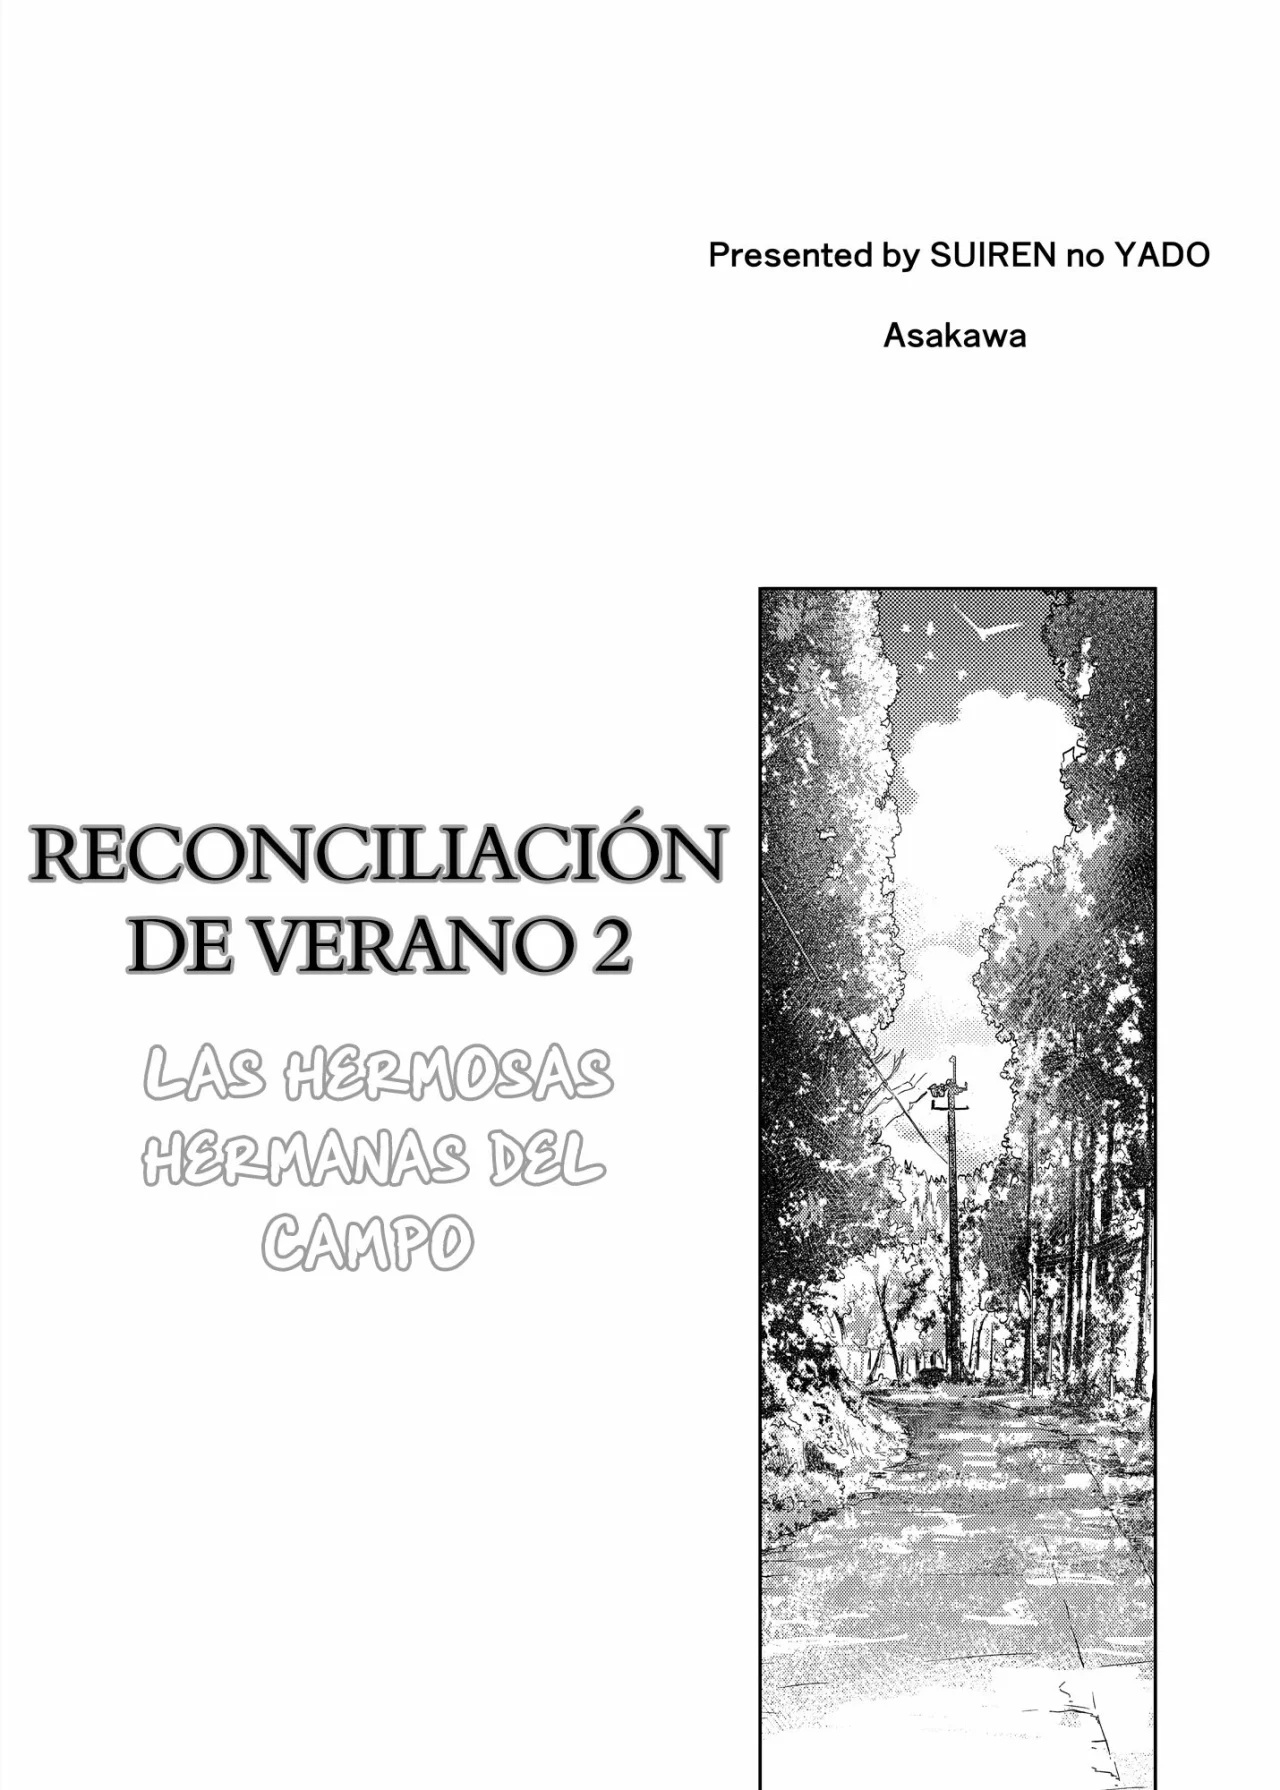 RECONCILIACION DE VERANO 2 - LAS HERMOSAS HERMANAS DEL CAMPO - 3